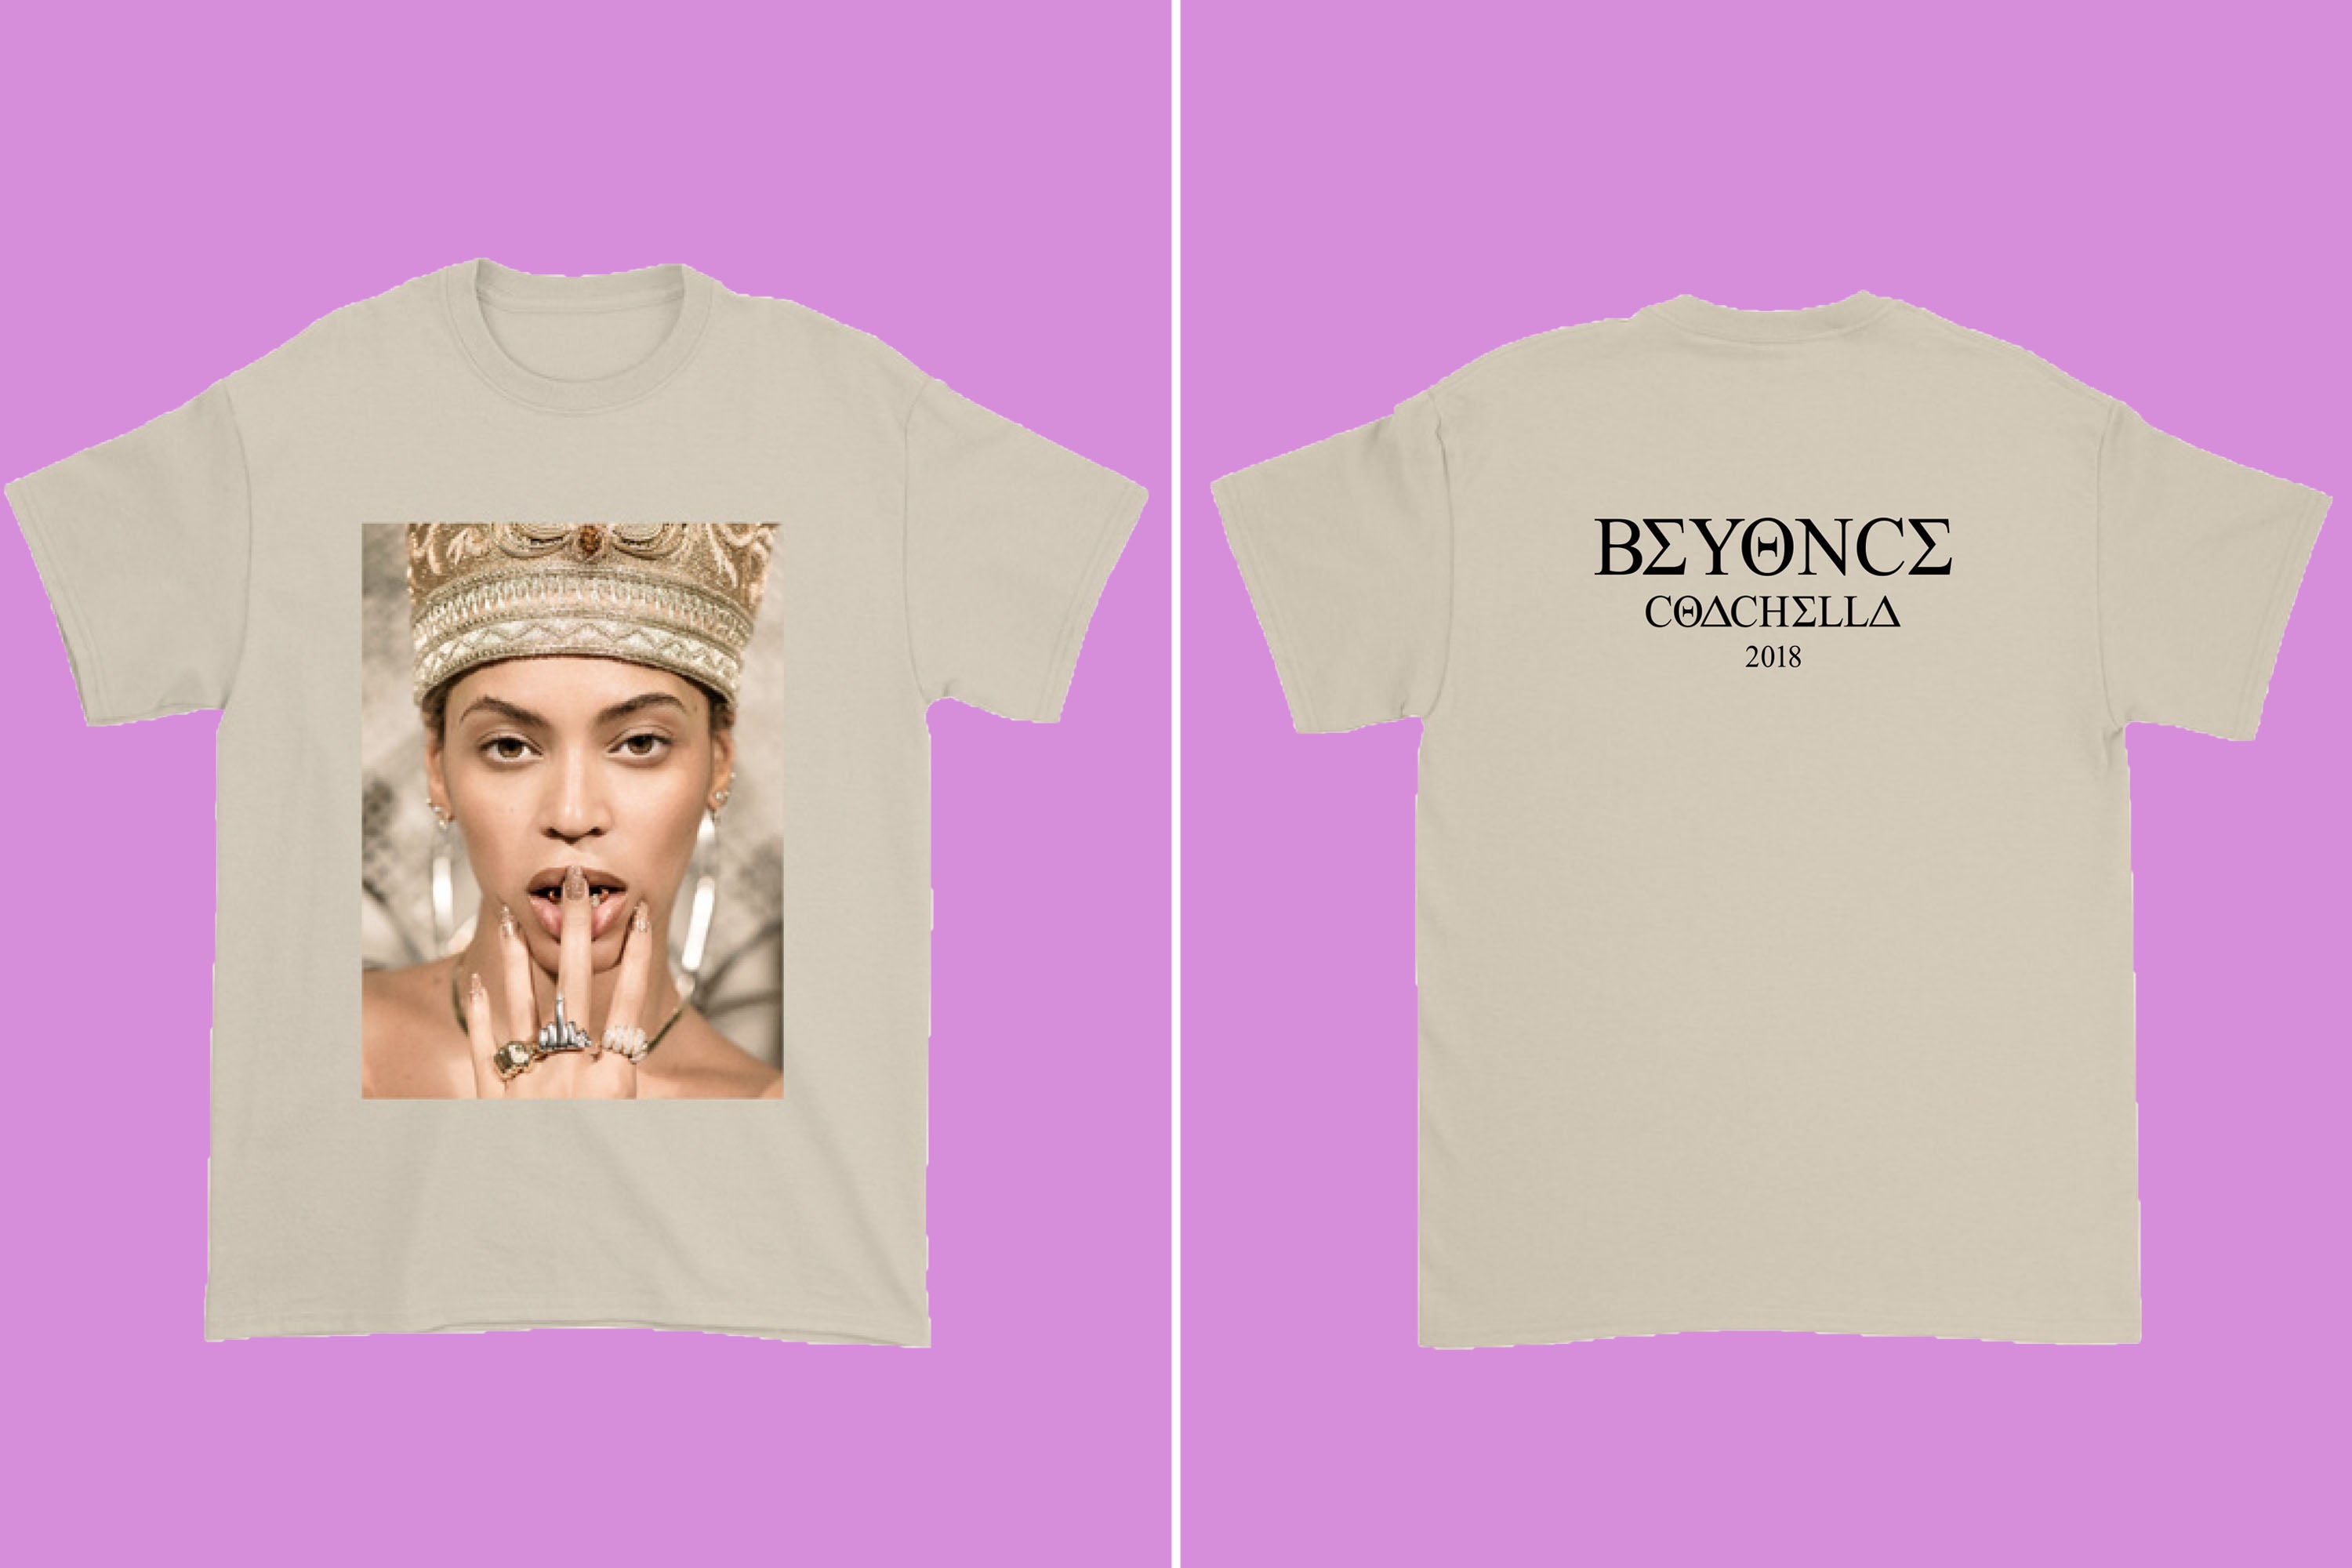 Beyoncé Coachella  Merch